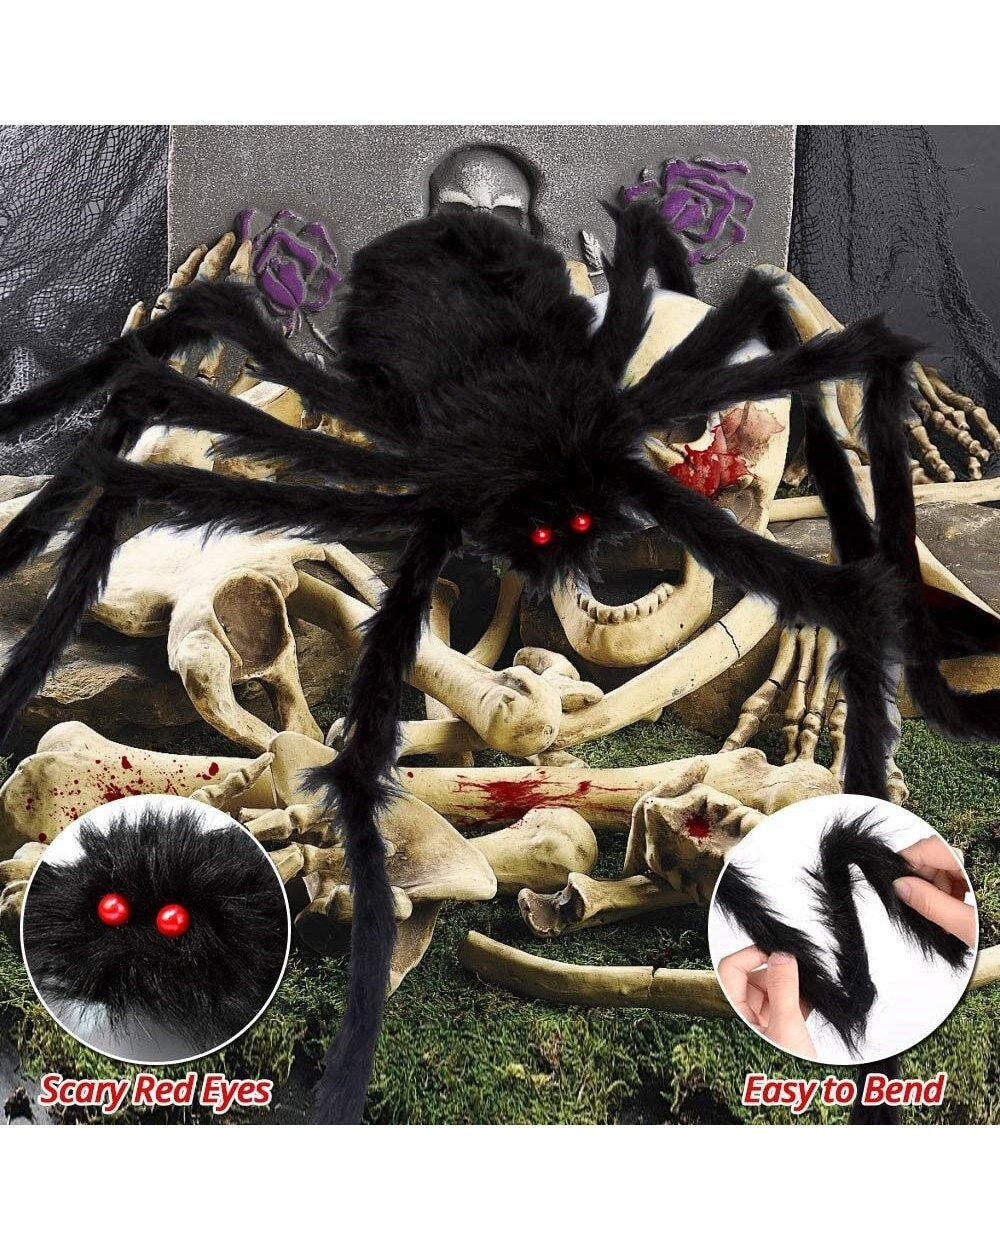 200" Halloween Spider Web + 59" Giant Spider Decorations Fake Spider